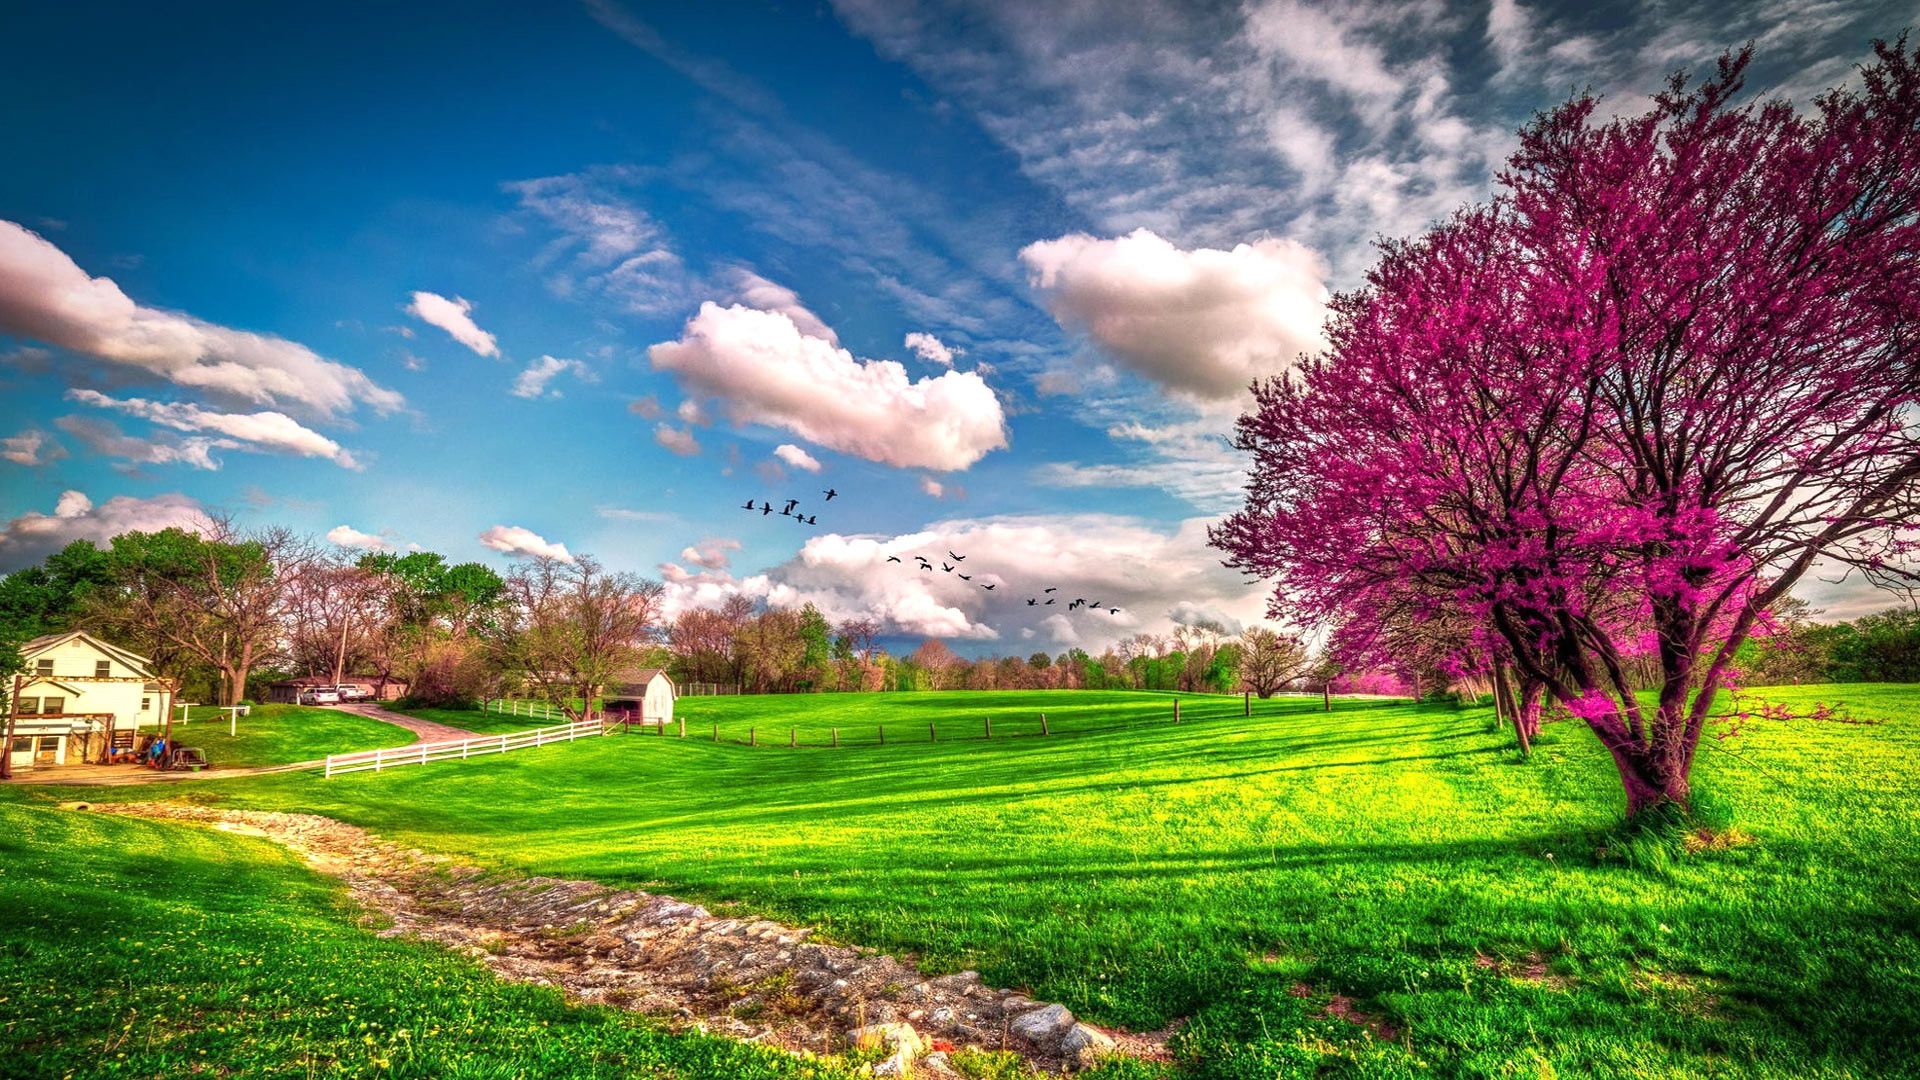 تصویر زمینه و والپیپر زیبا از یک مزرعه در فصل بهار